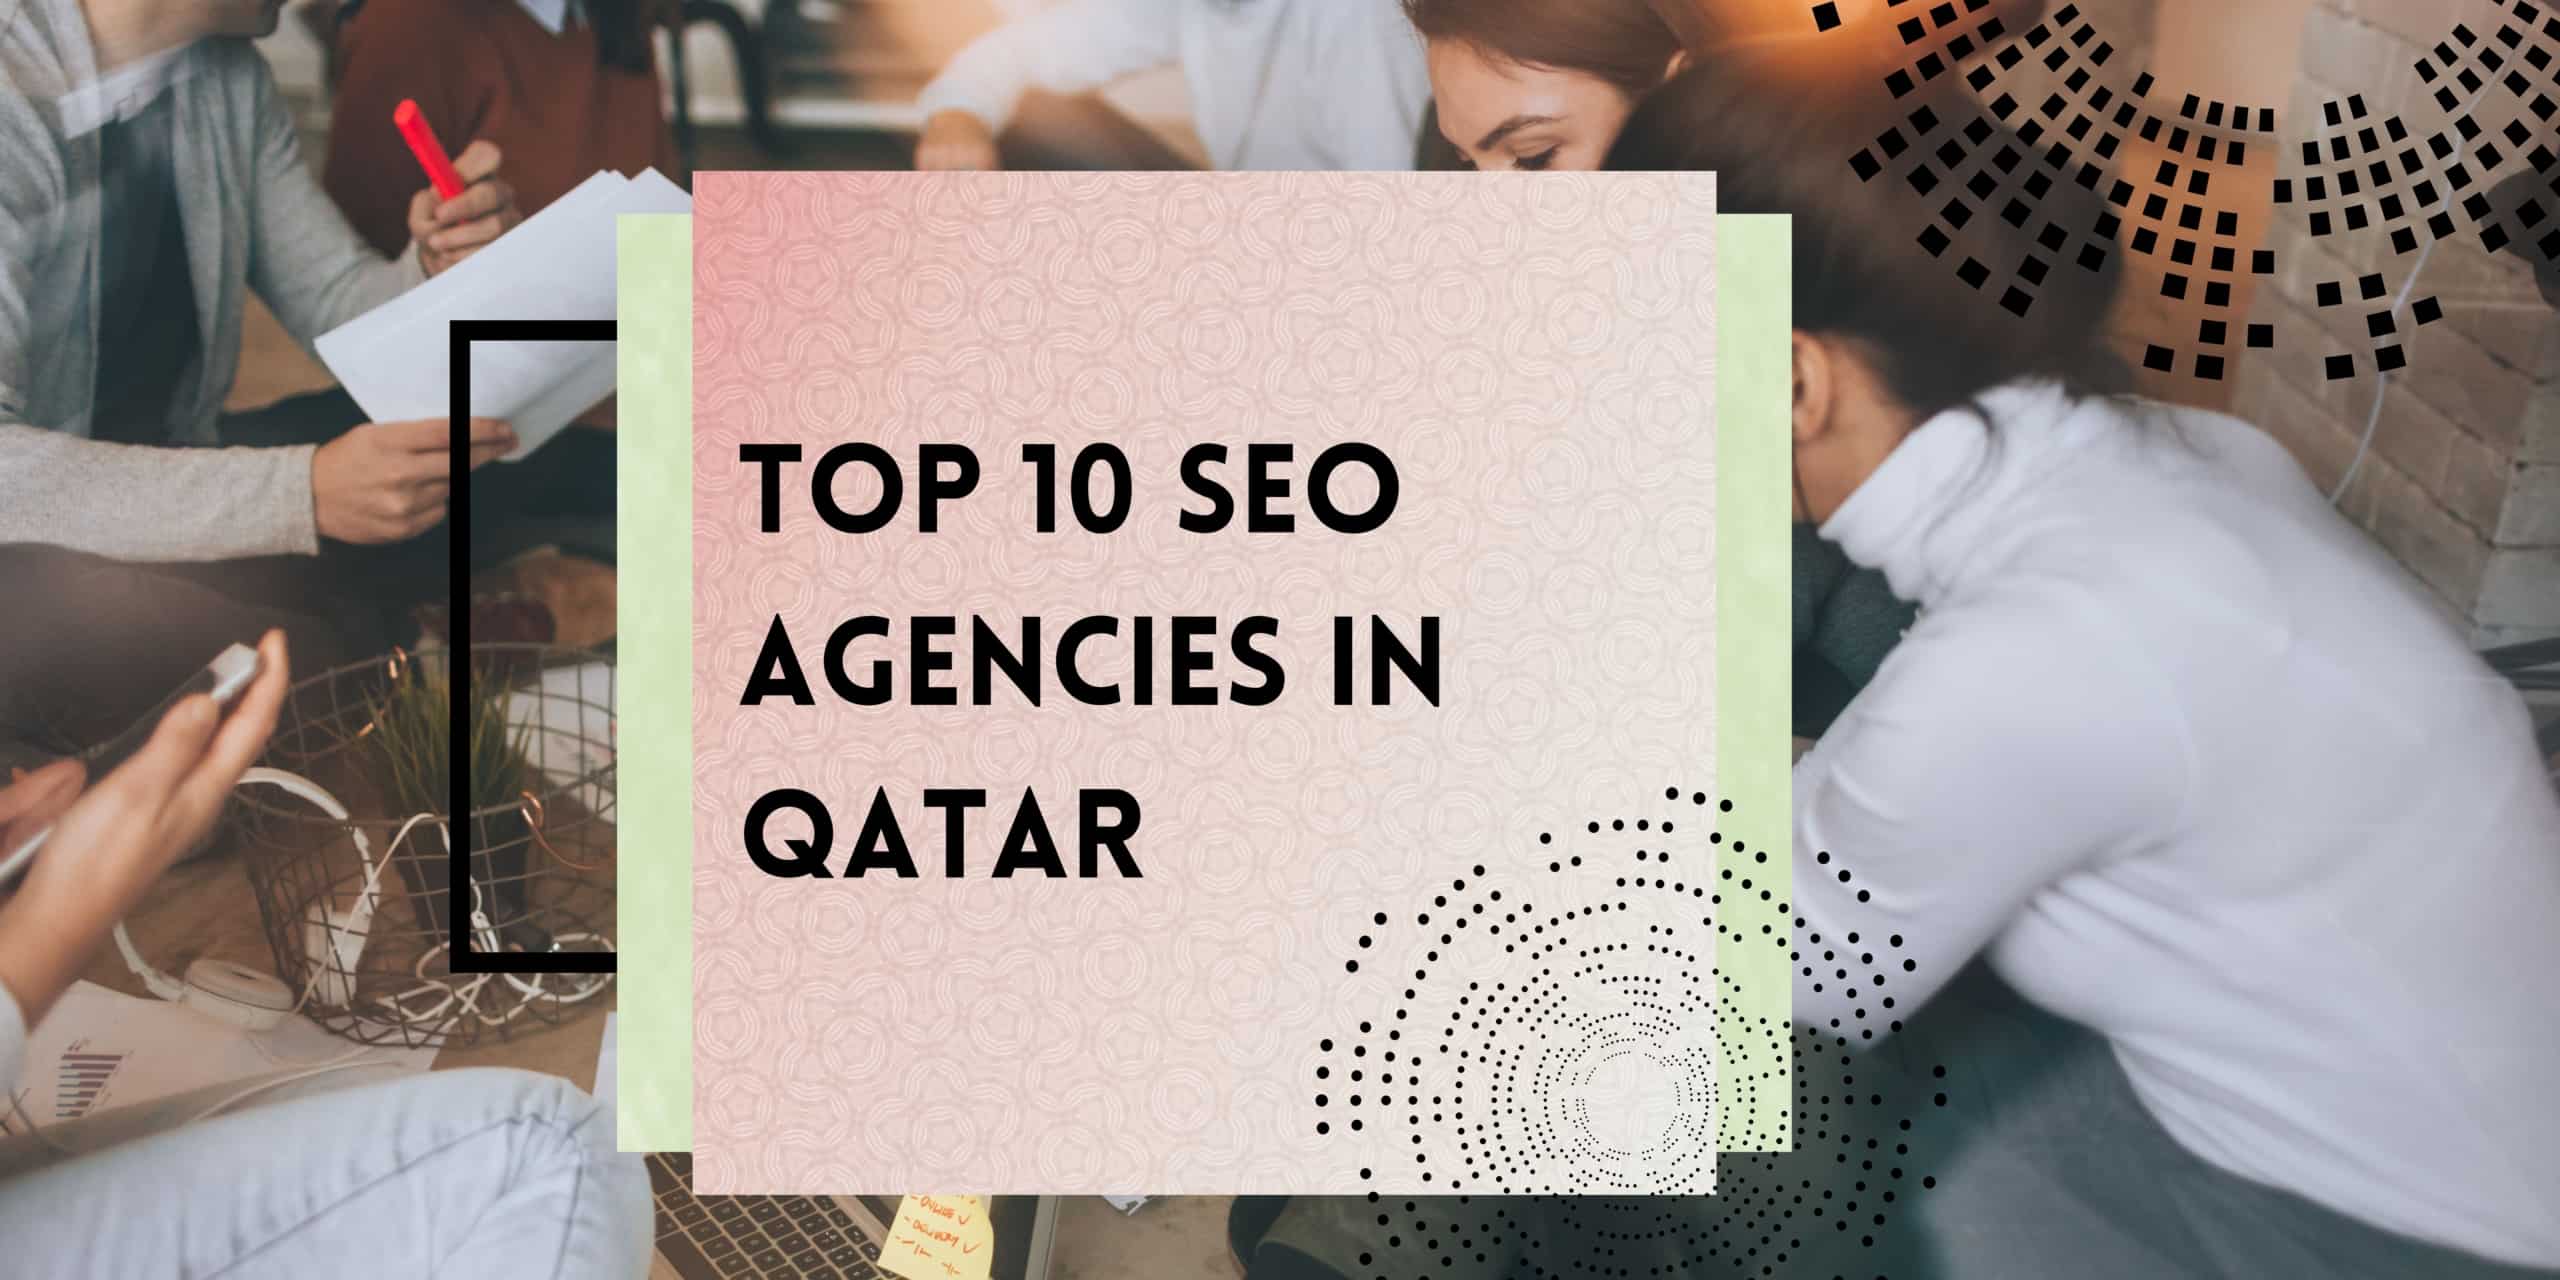 Top 10 SEO Agencies in Qatar